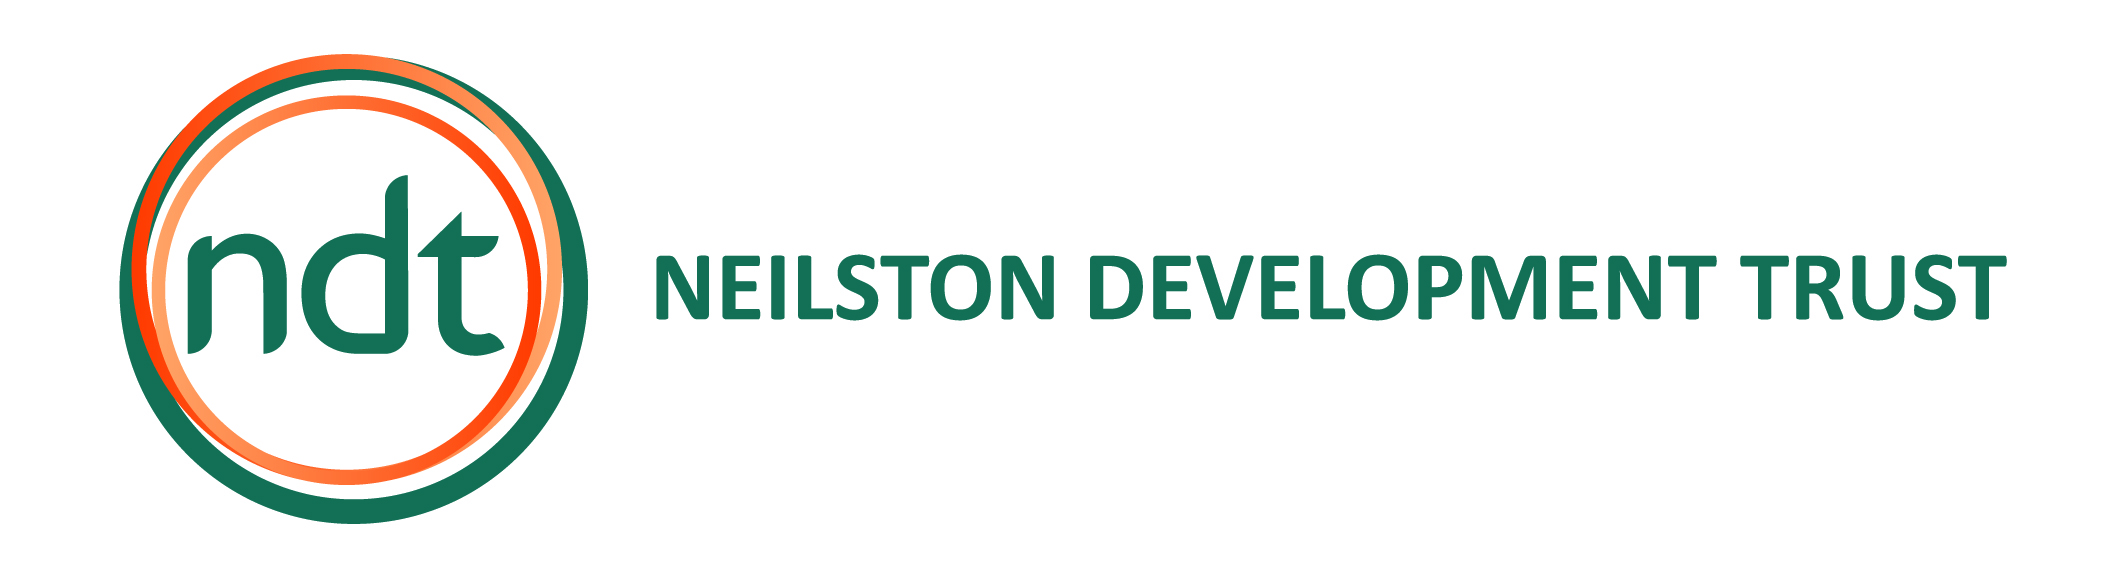 logo for Neilston Development Trust